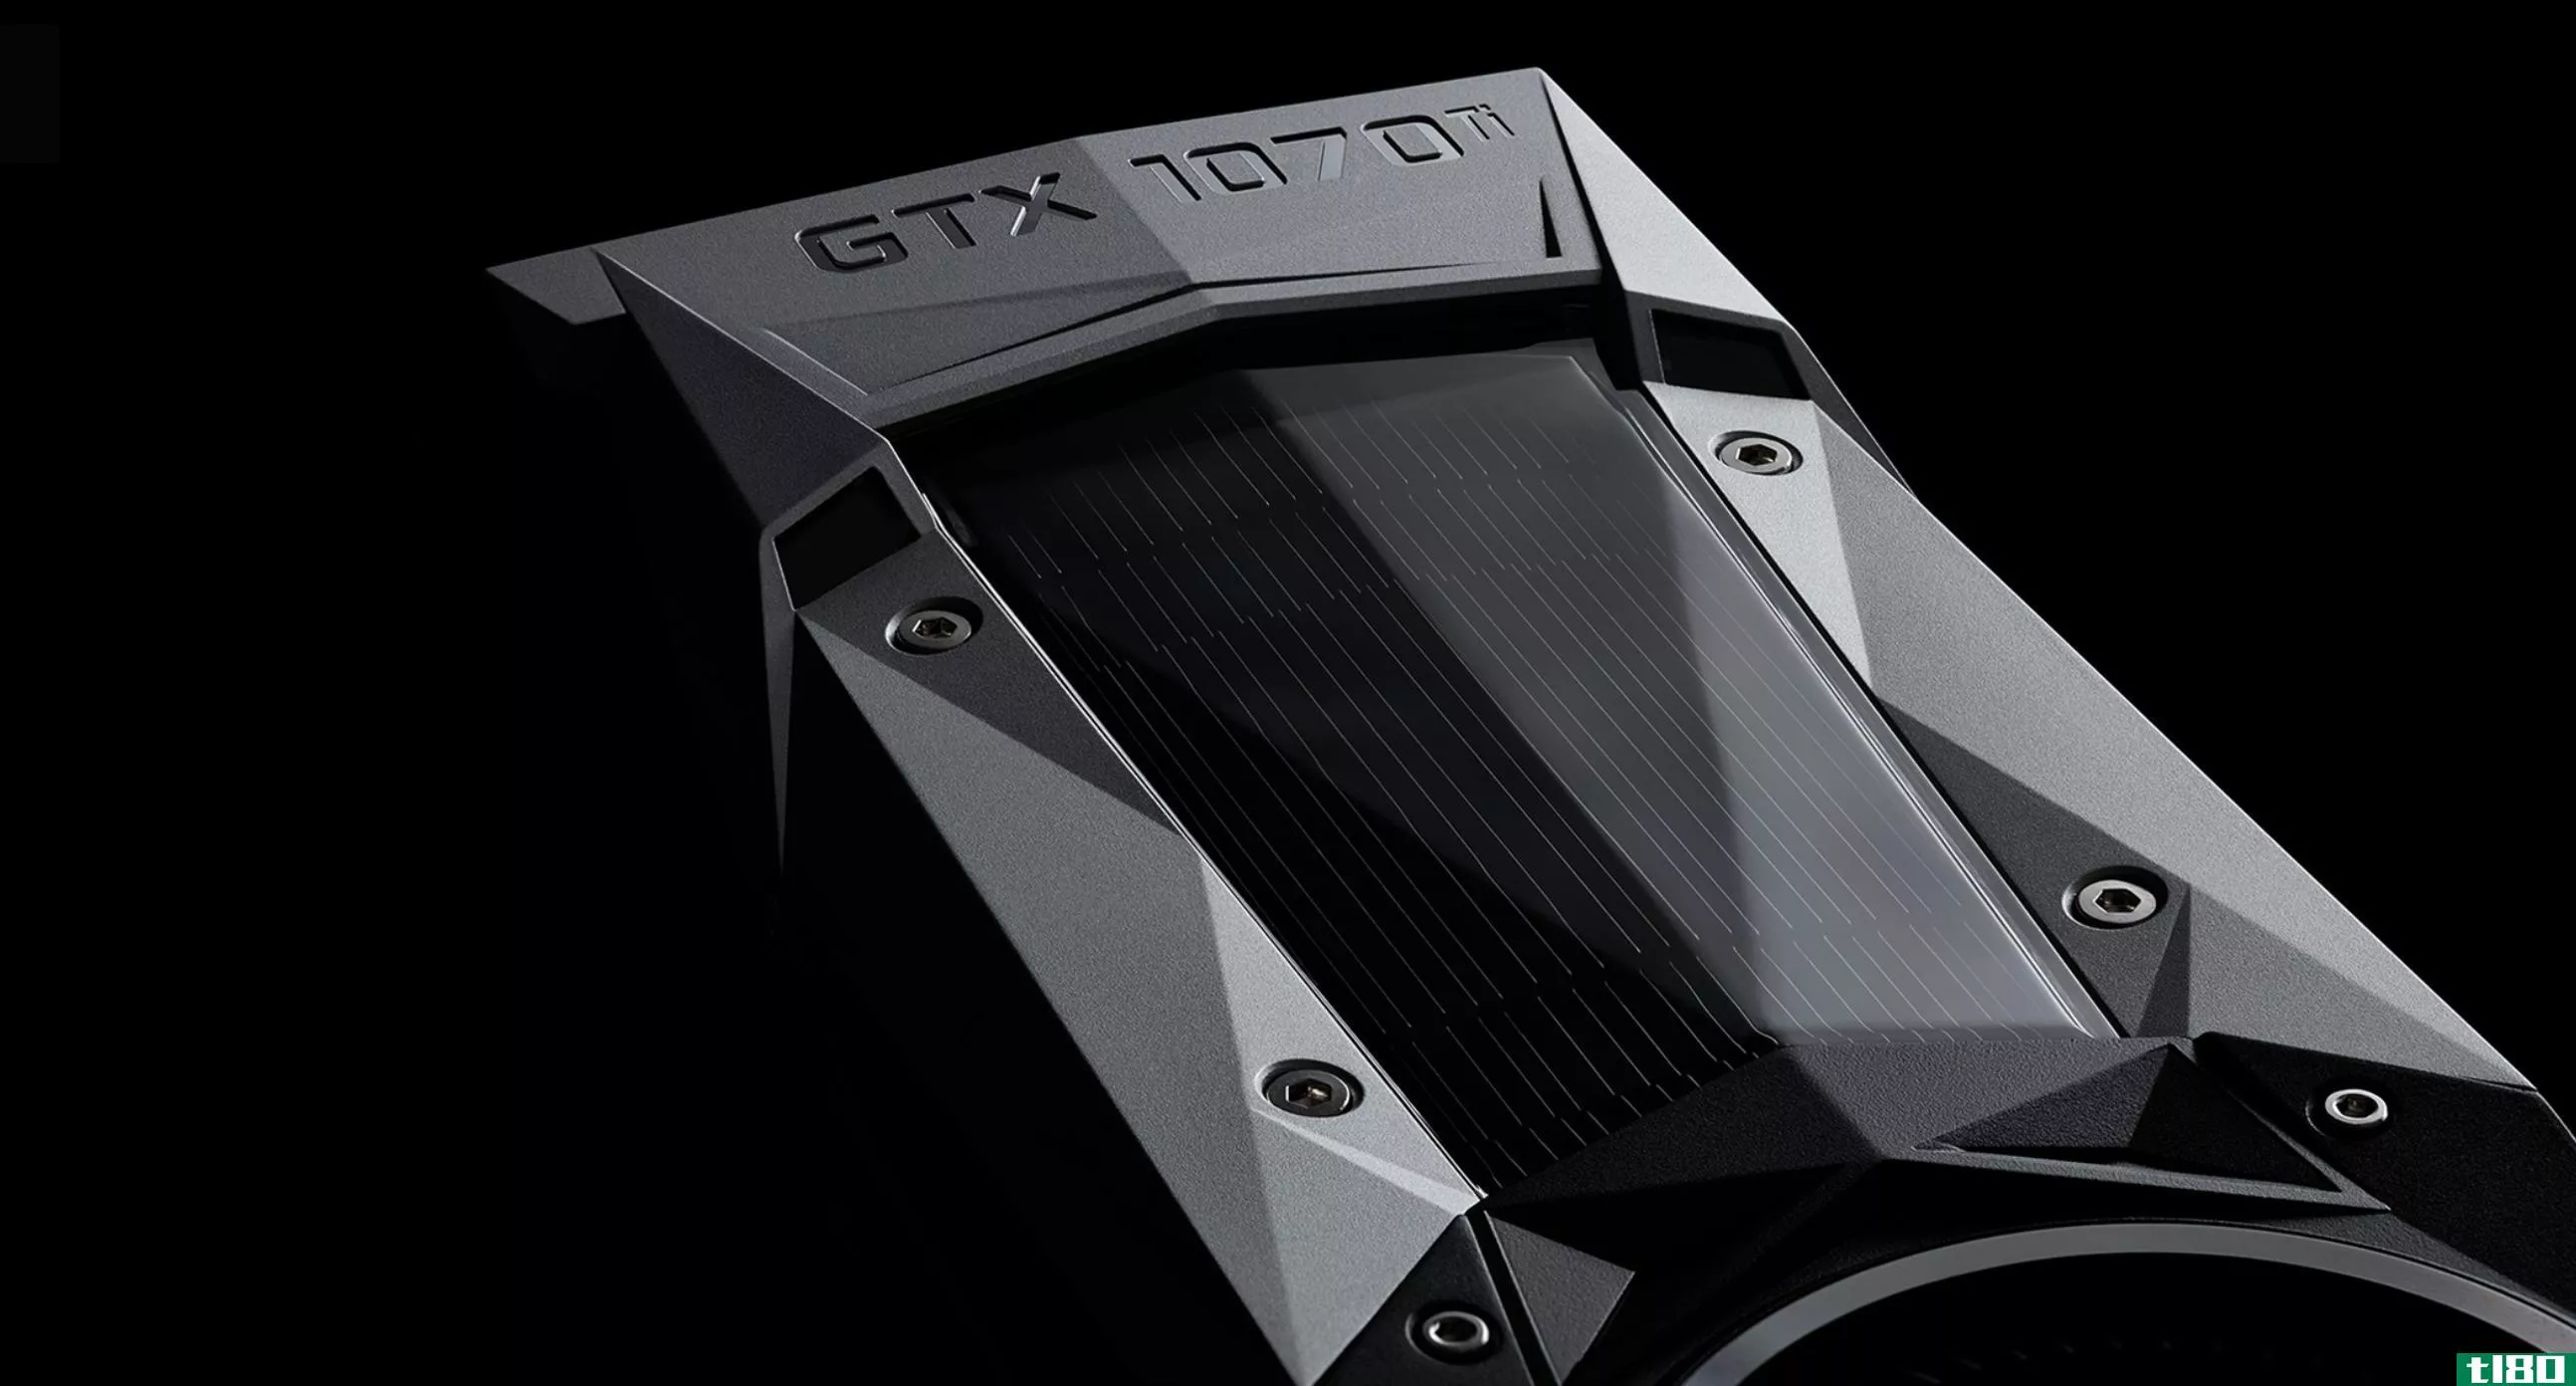 nvidia新推出的449美元gtx1070ti图形卡是1070的一个更强大的版本